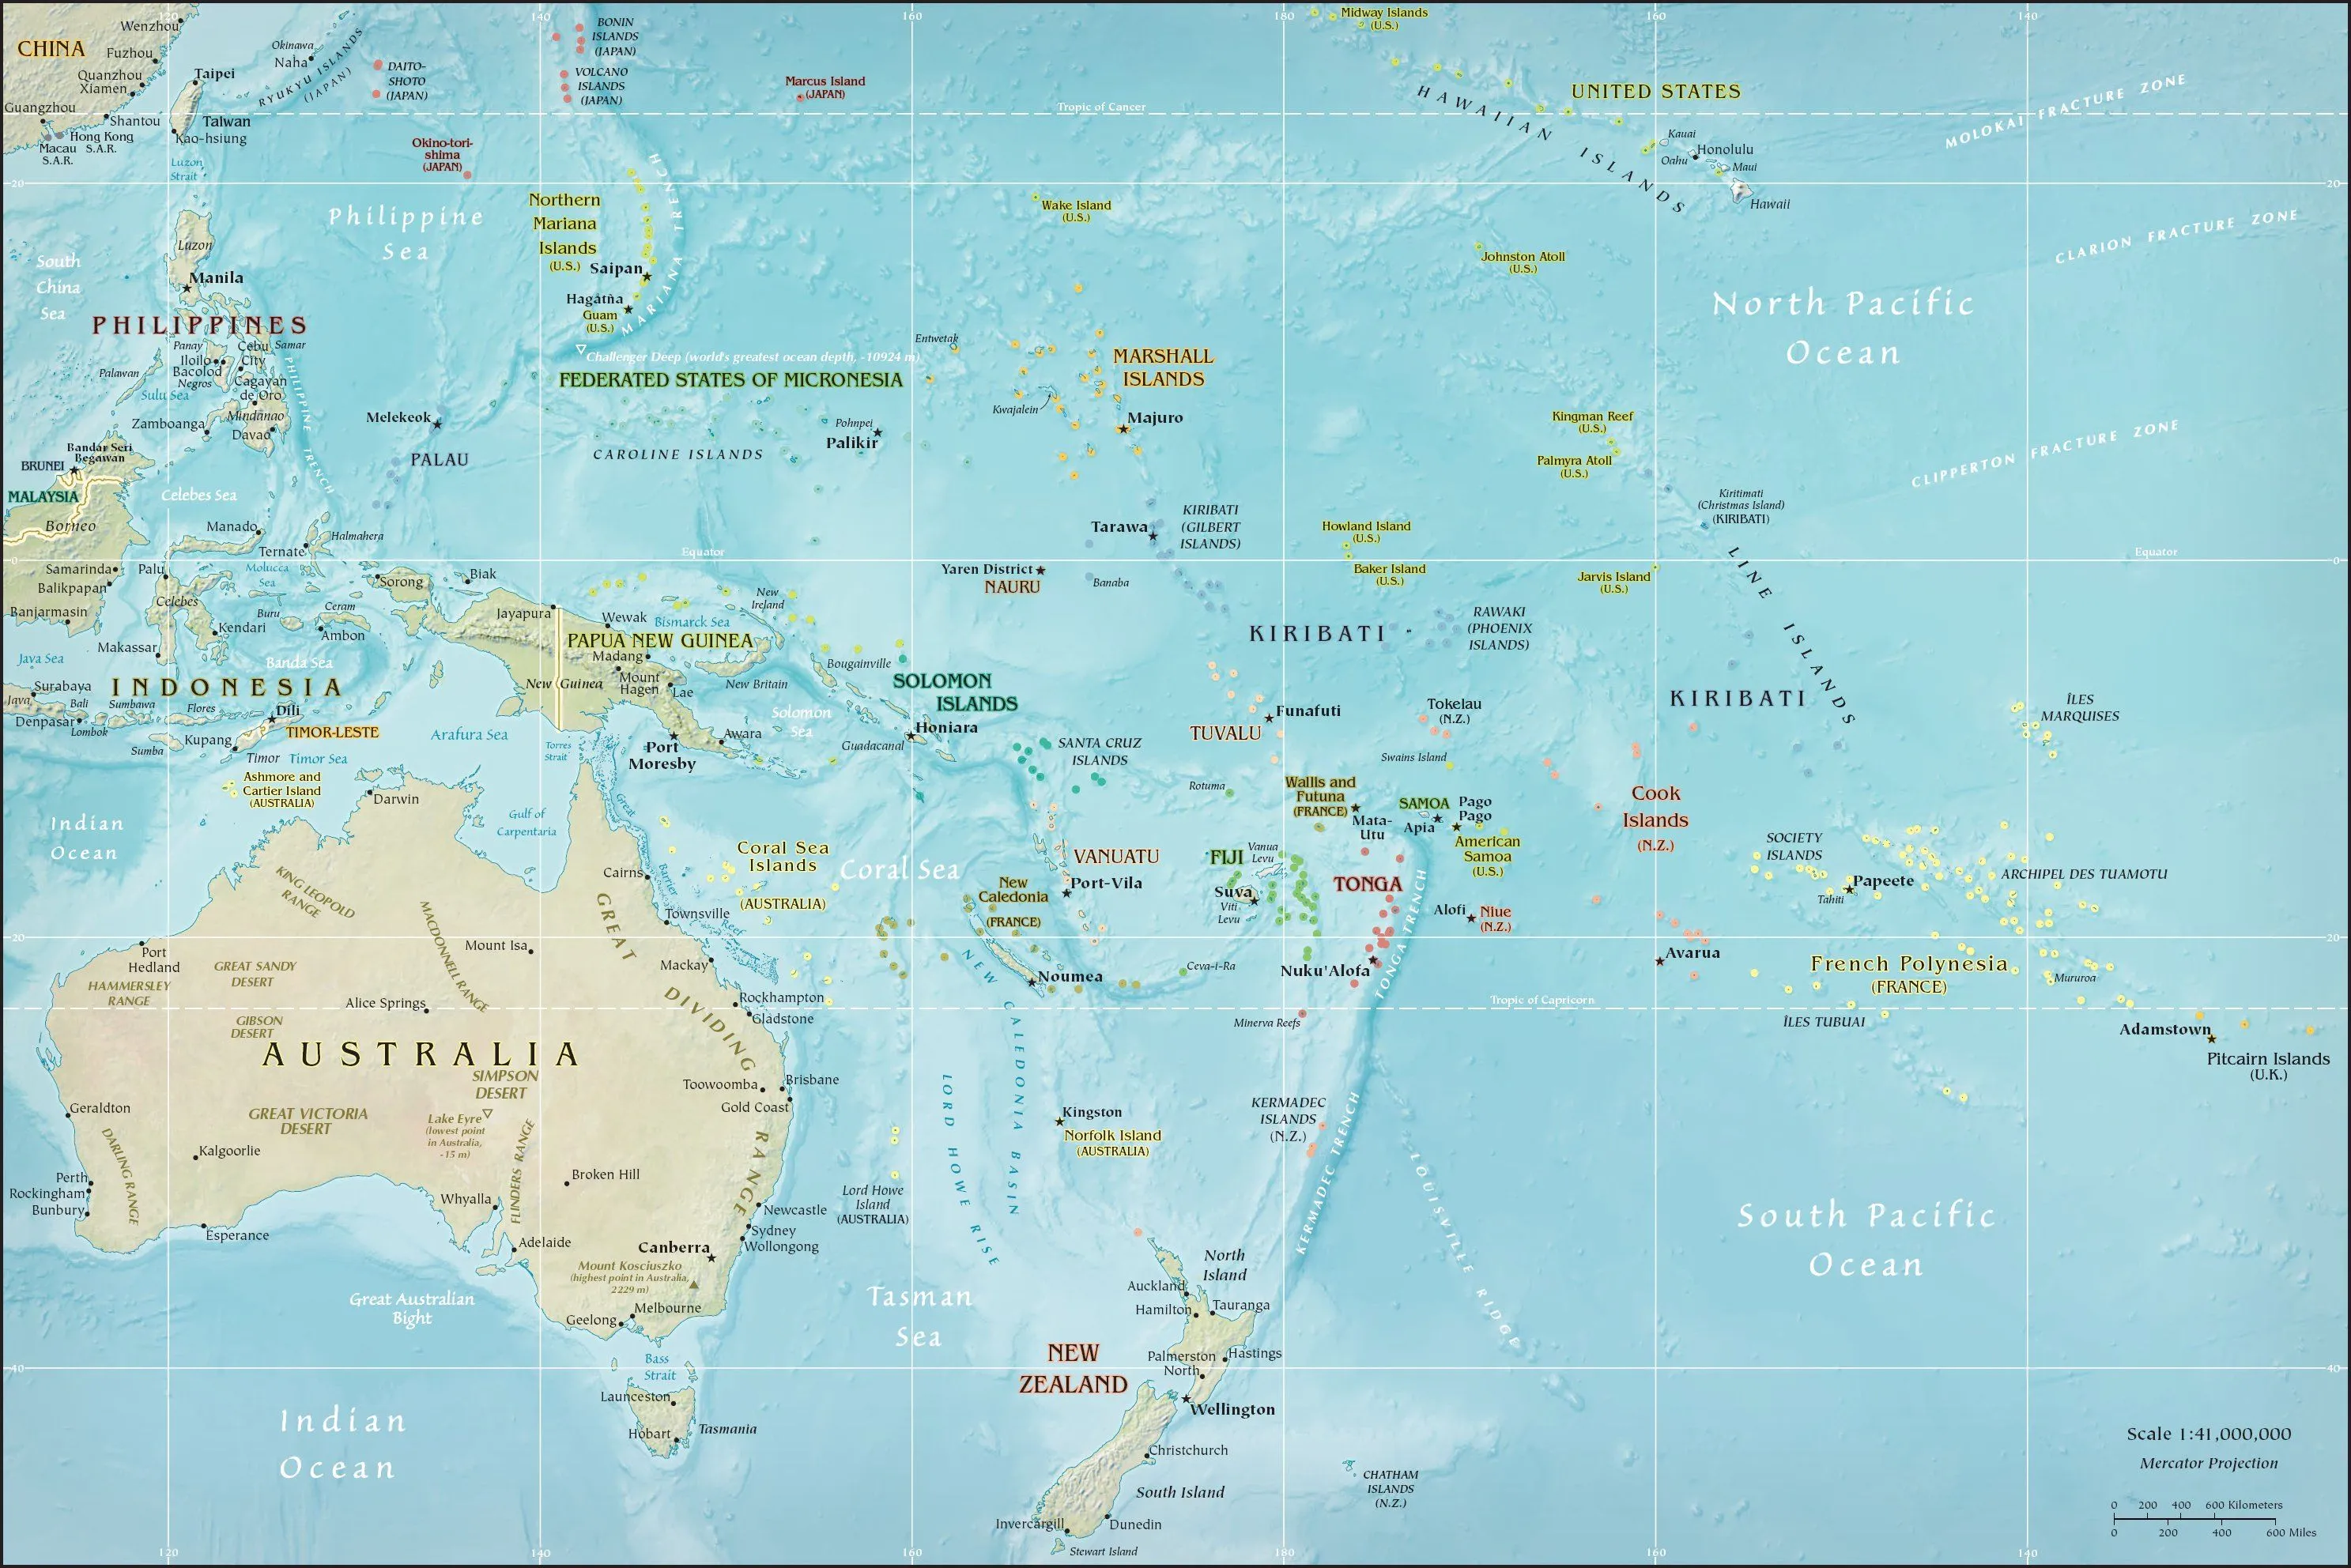 Mapa Físico de Oceanía 2009 - Tamaño completo